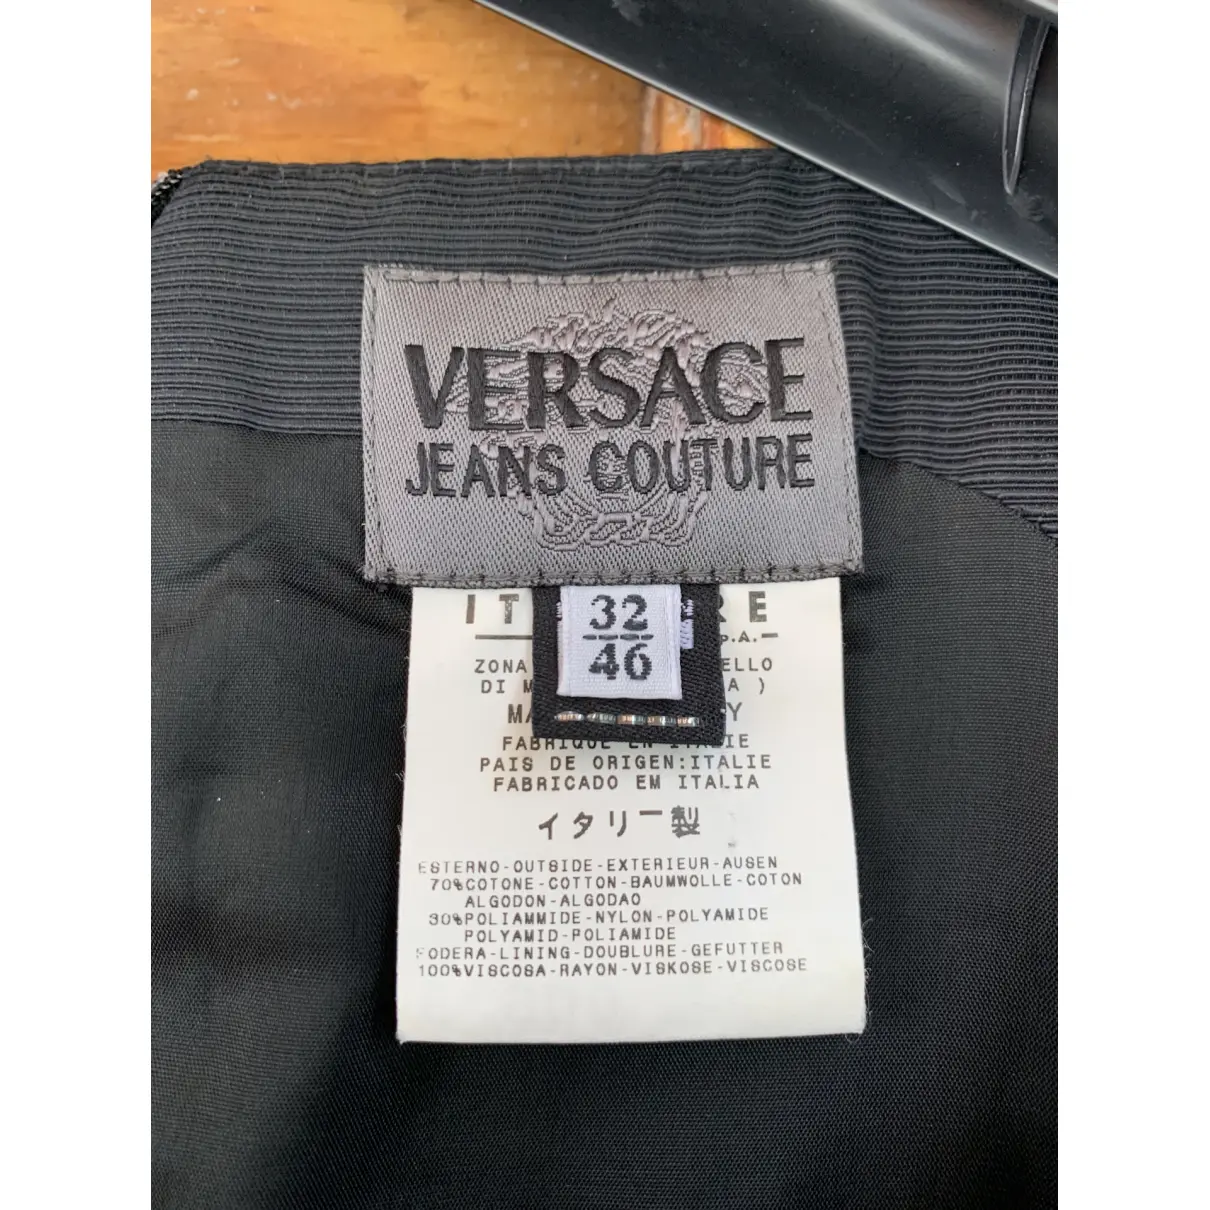 Dress Versace Jeans Couture - Vintage